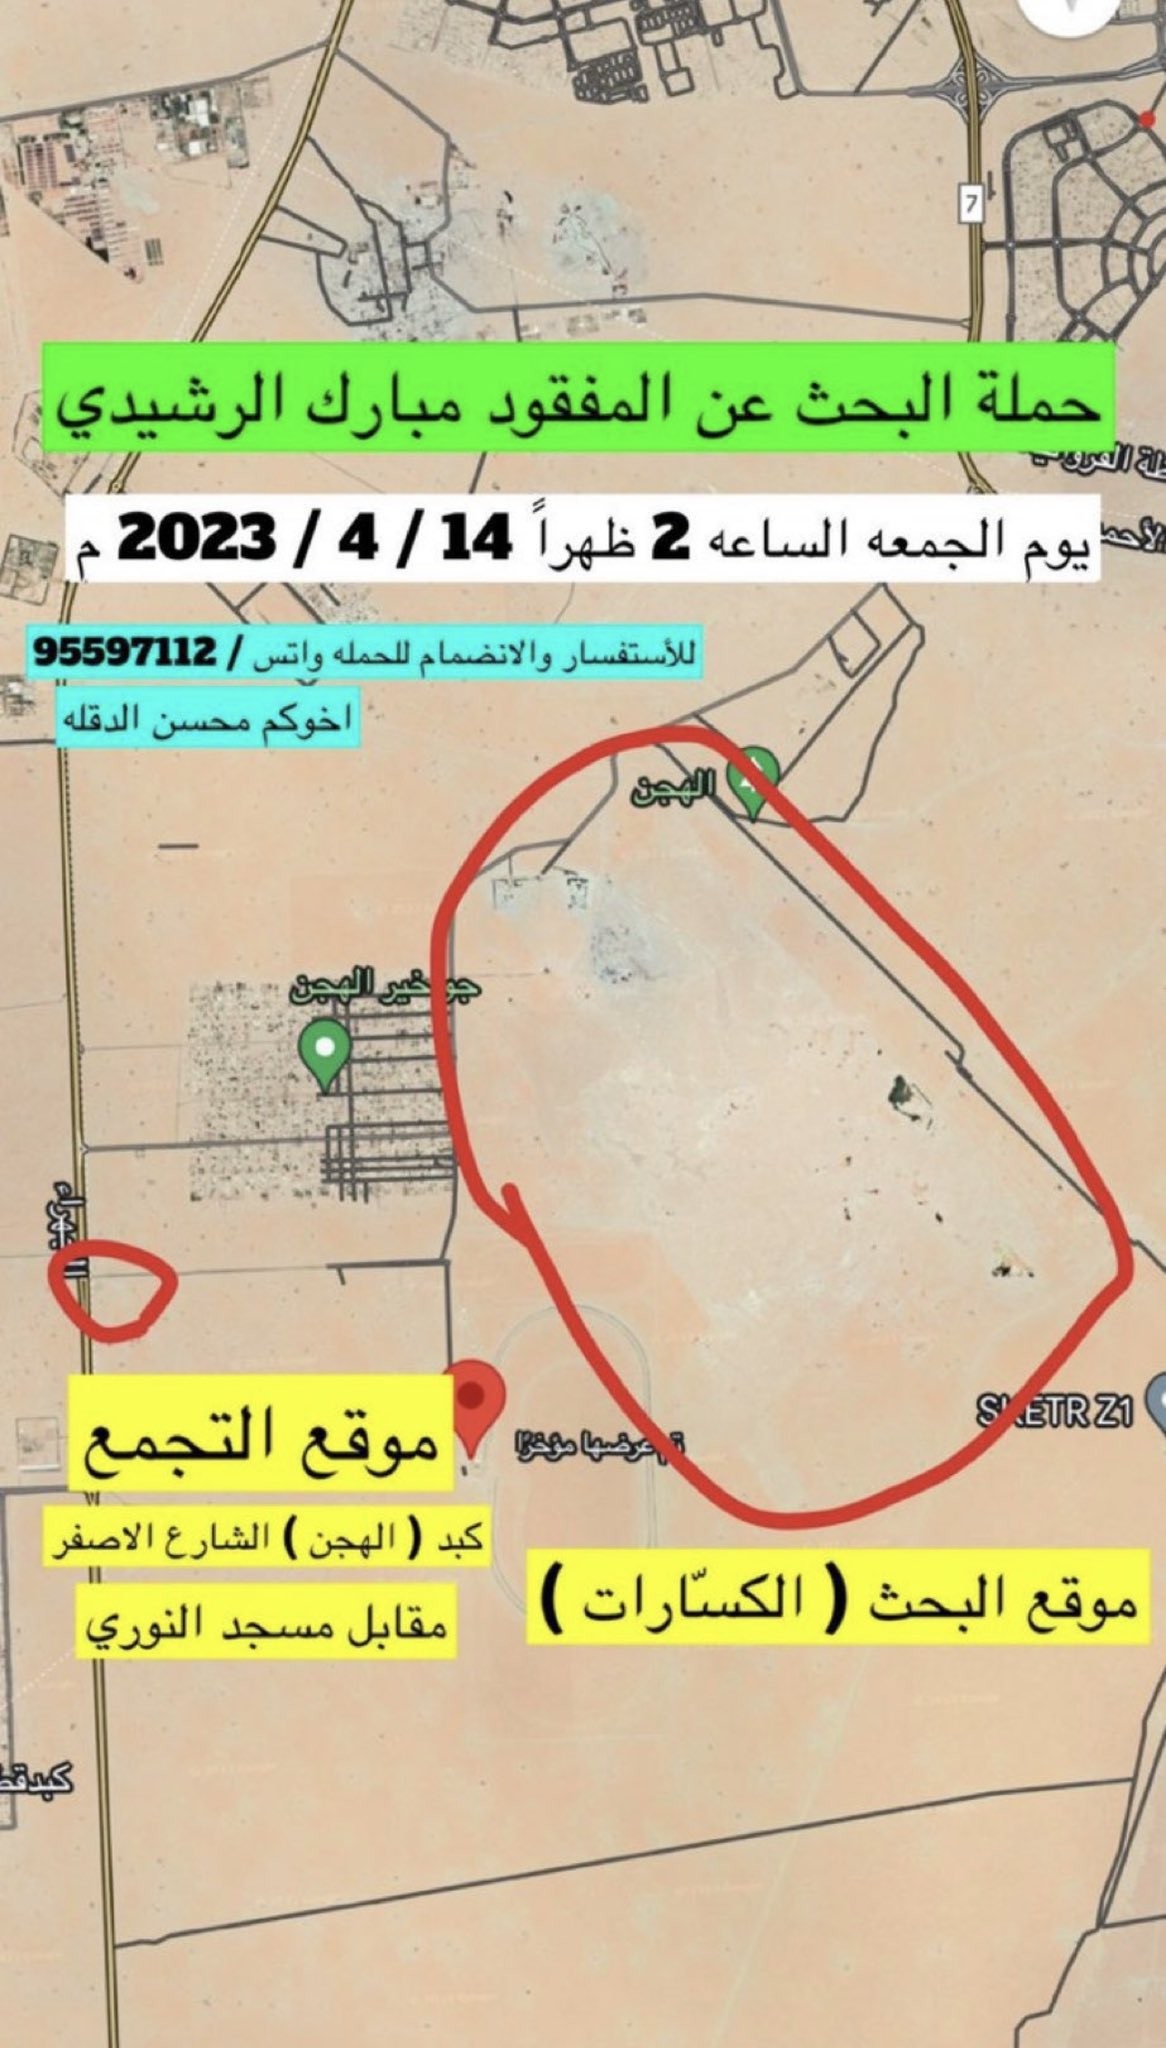 تفاصيل خطة البحث المفقود مبارك علي الرشيدي في الكويت